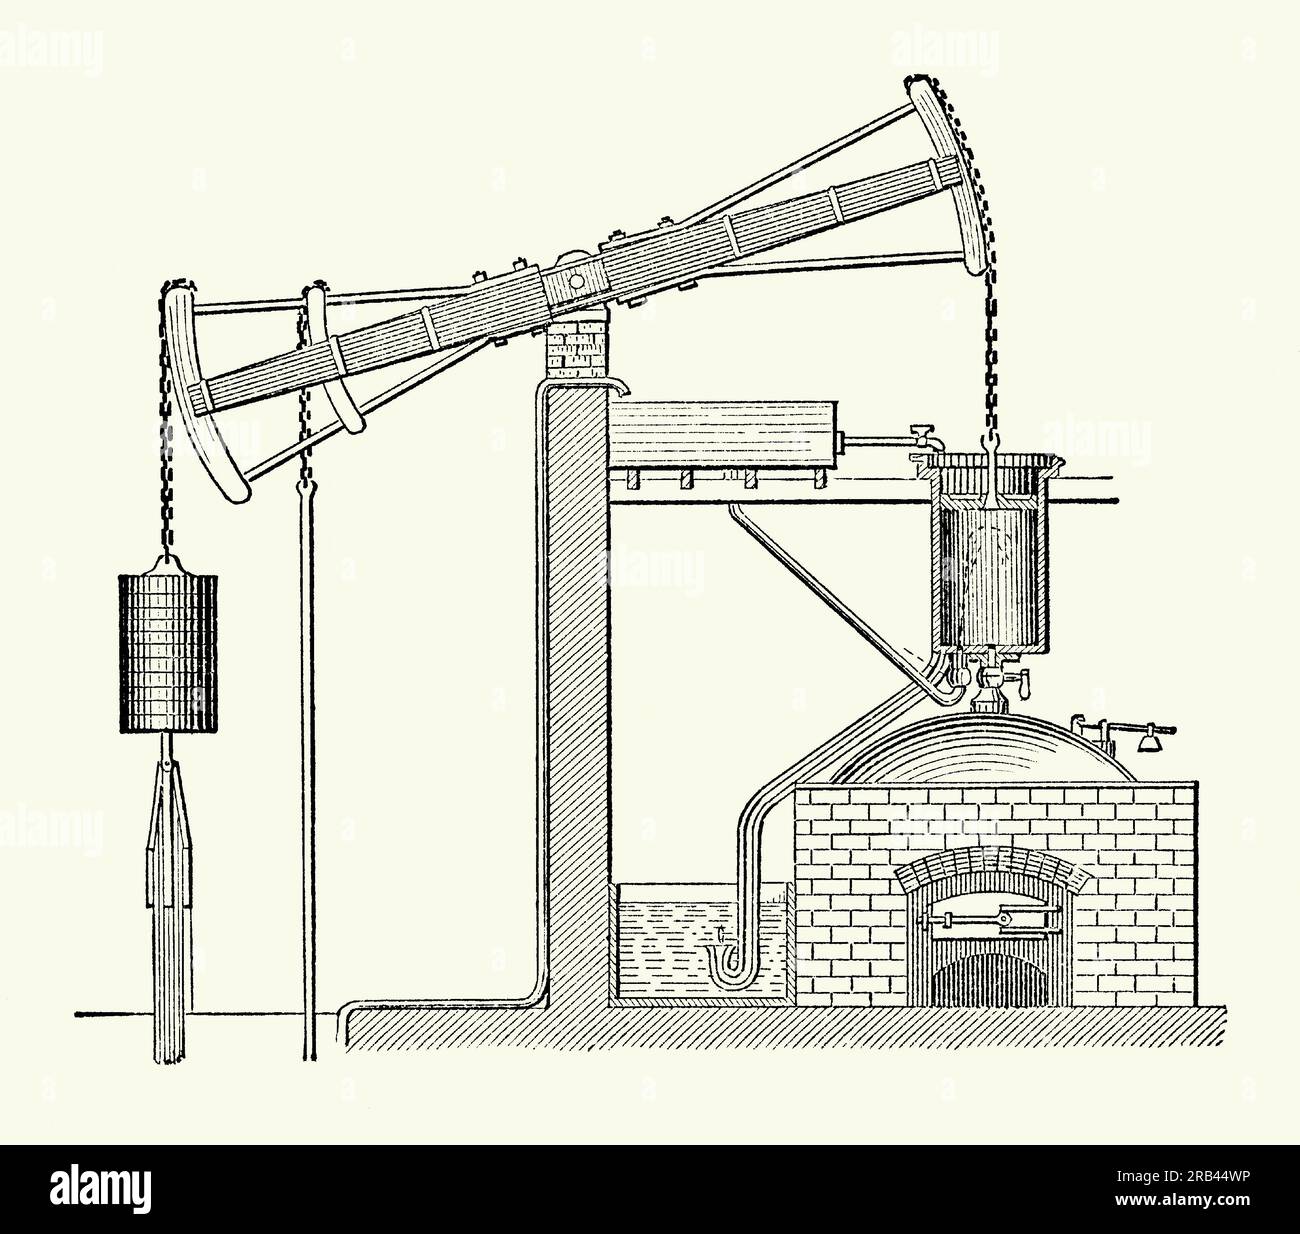 Une gravure ancienne du moteur de Newcomen. Il est tiré d'un livre de génie mécanique victorien des années 1880 Le moteur atmosphérique (Newcomen ou pompier Newcomen) a été inventé par Thomas Newcomen en 1712. Le moteur fonctionnait en condensant la vapeur aspirée dans le cylindre, créant ainsi un vide partiel qui permettait à la pression atmosphérique de pousser le piston dans le cylindre. C'était le premier dispositif pratique pour exploiter la vapeur pour produire de l'énergie mécanique. Les moteurs Newcomen ont été utilisés dans tout le Royaume-Uni et en Europe dans les années 1700, principalement pour pomper l'eau des mines. Banque D'Images